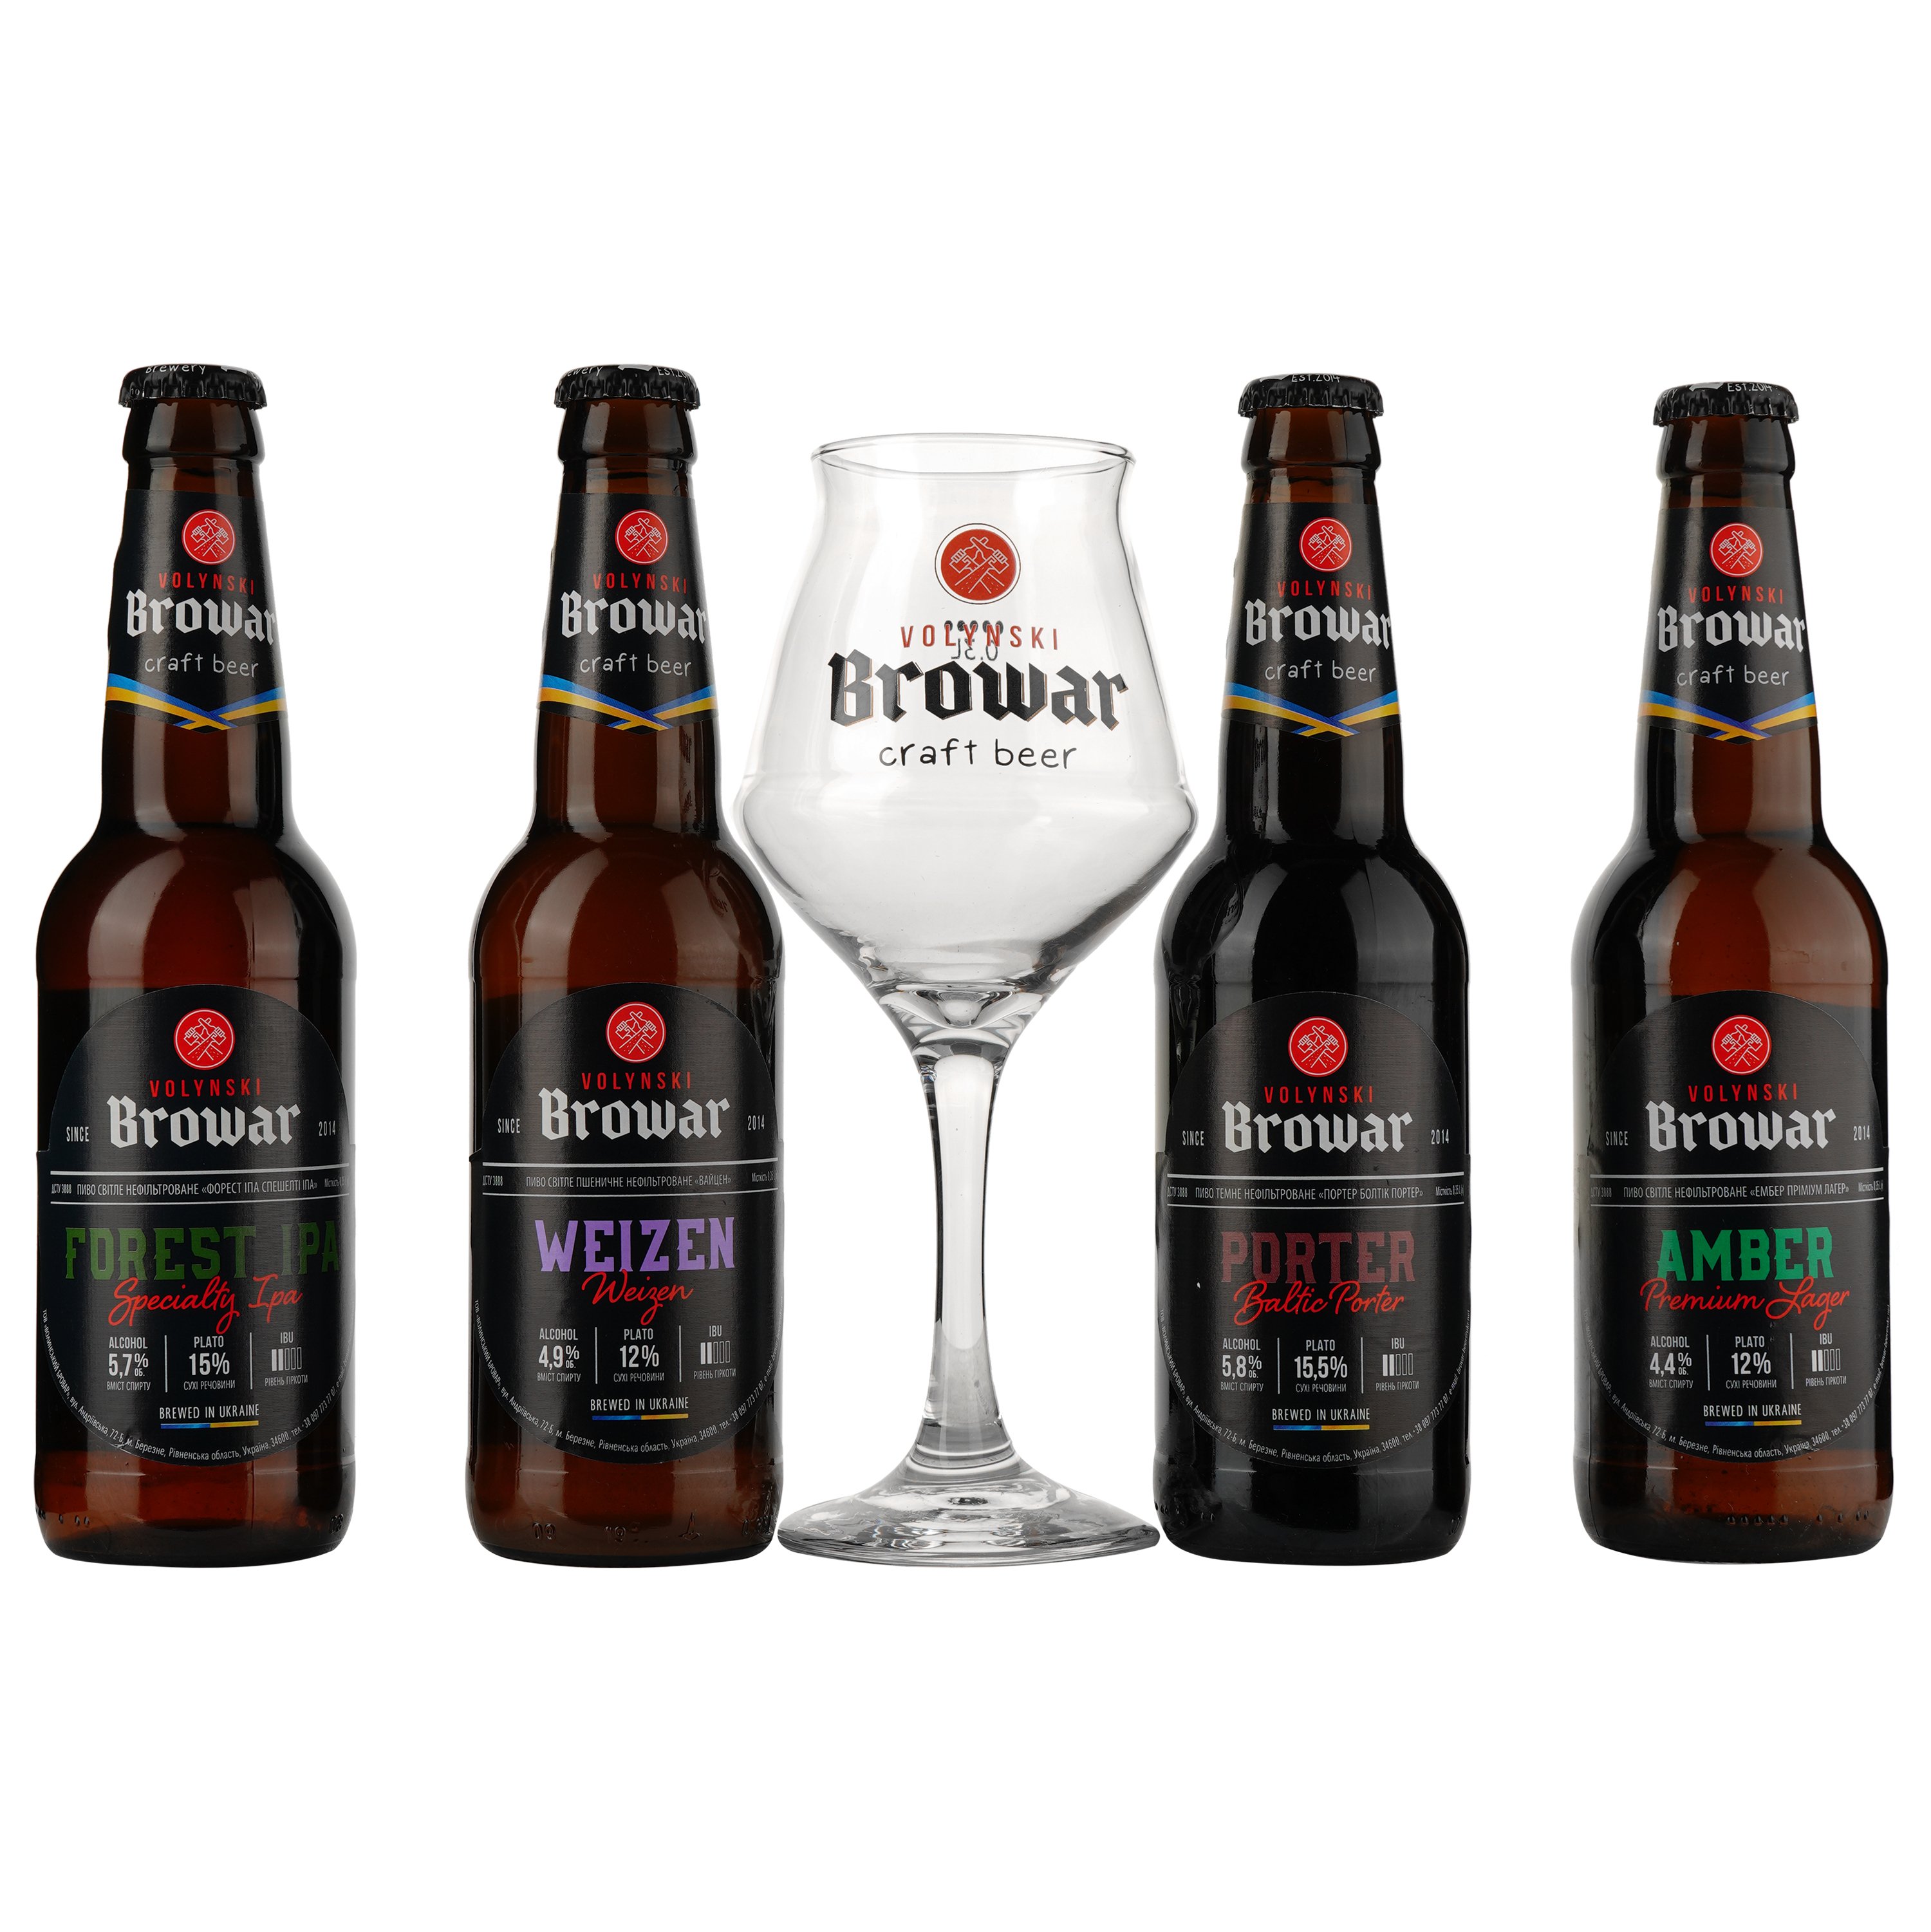 Подарунковий набір пива Volynski Browar, 3,8-5,8%, 1,4 л (4 шт. по 0,35 л) + Келих Somelier, 0,4 л - фото 2